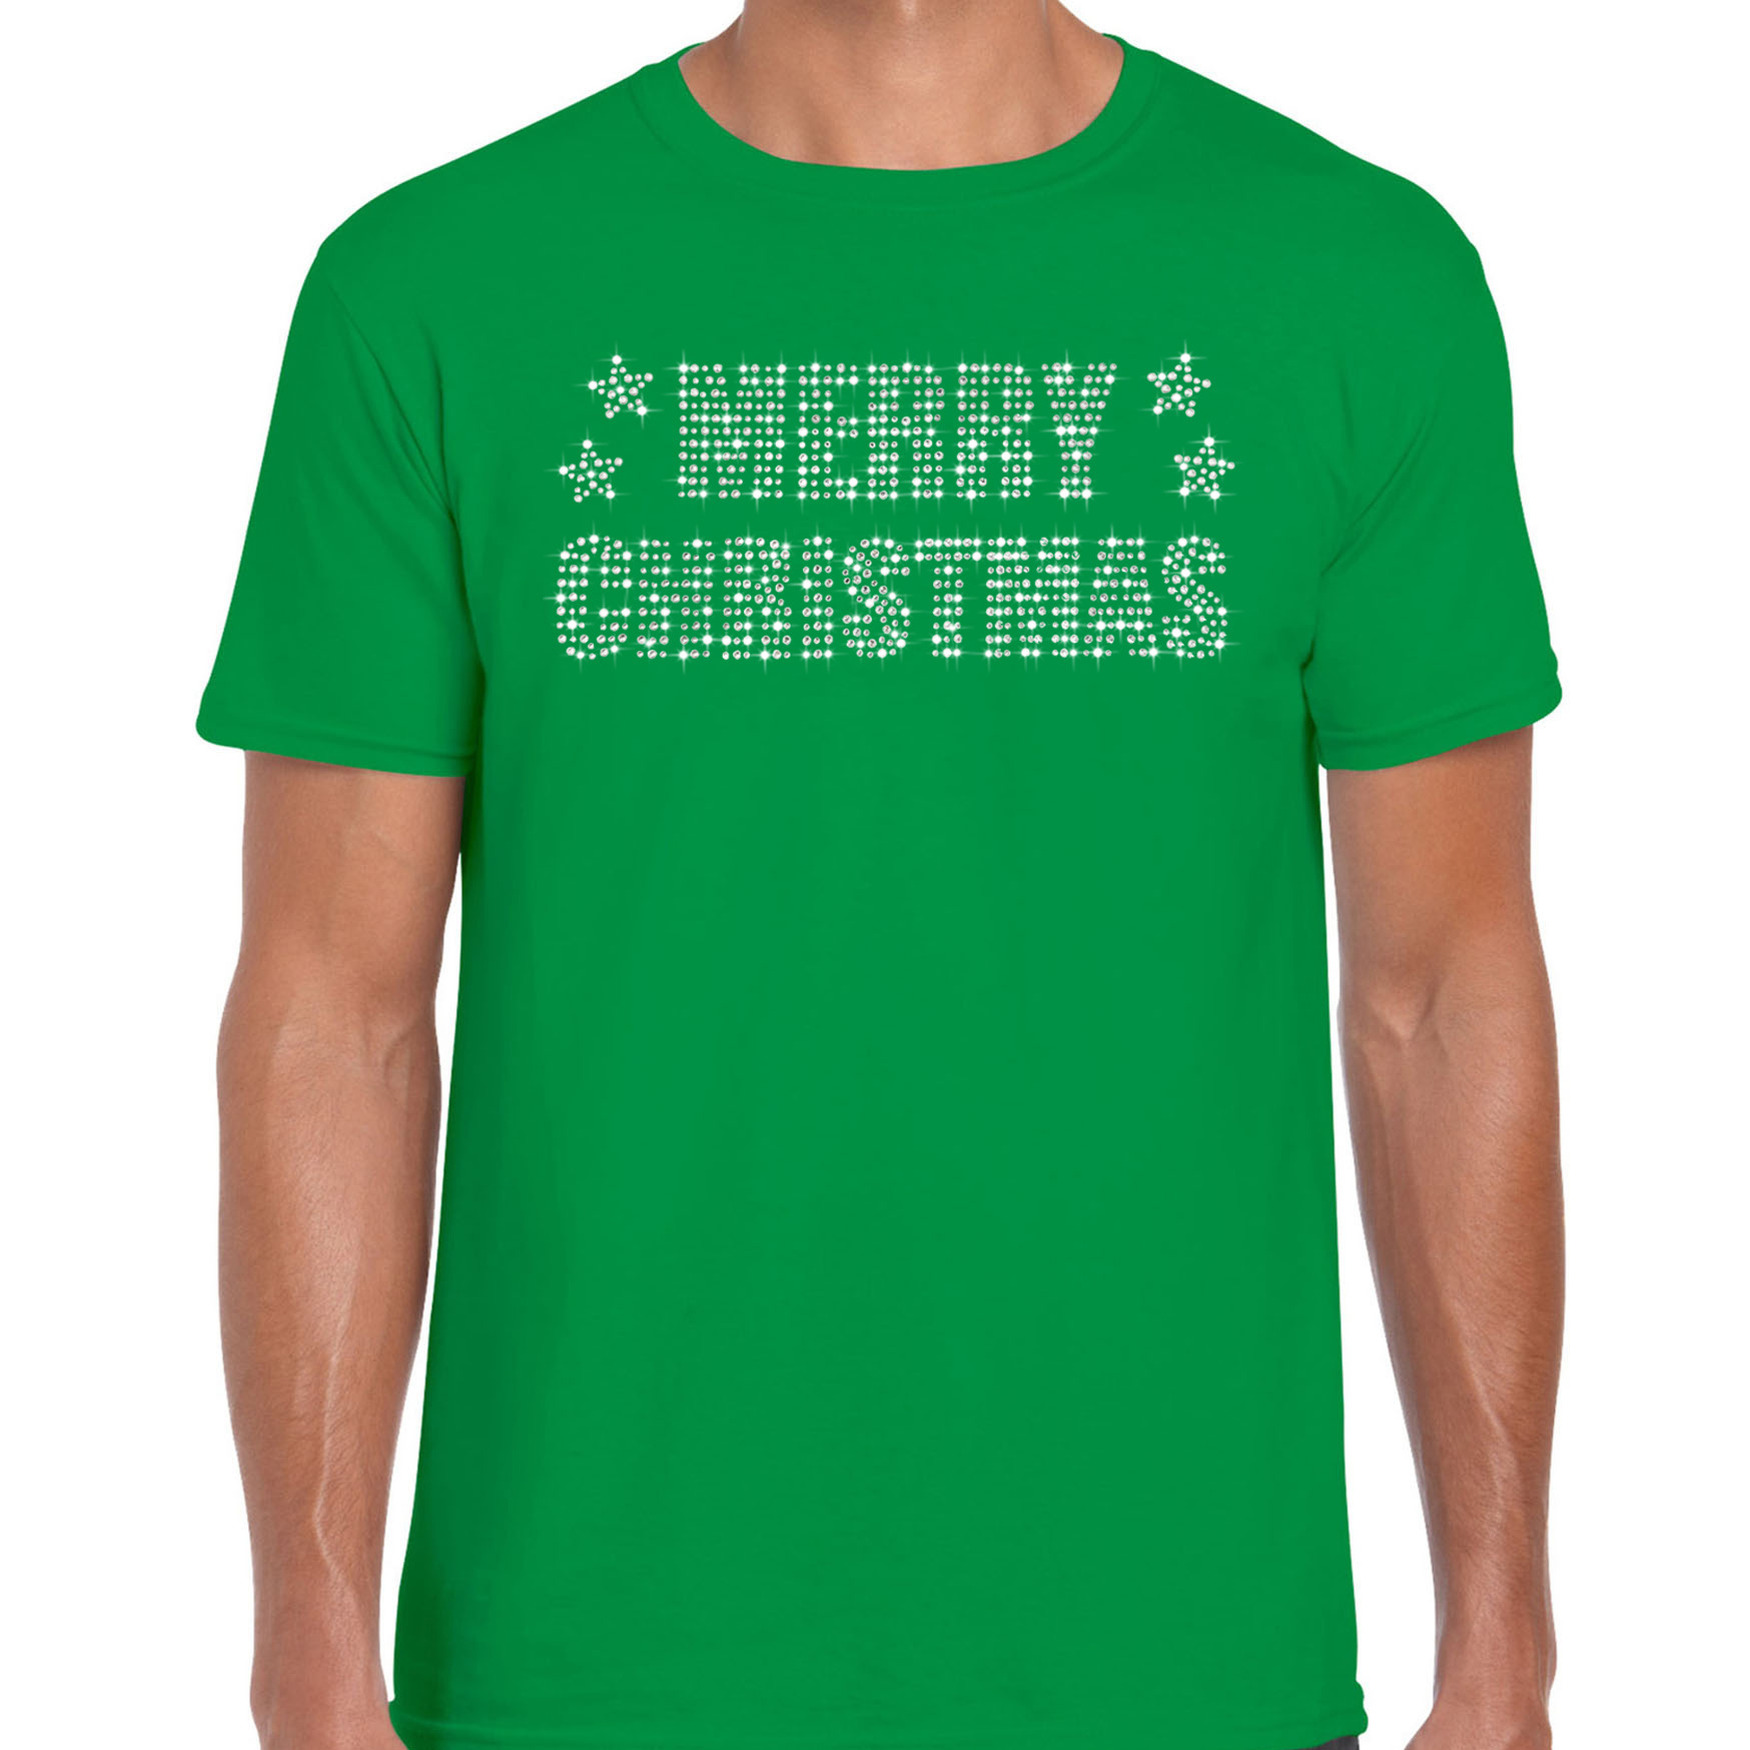 Glitter kerst t-shirt groen Merry Christmas glitter steentjes voor heren - Glitter kerst shirt